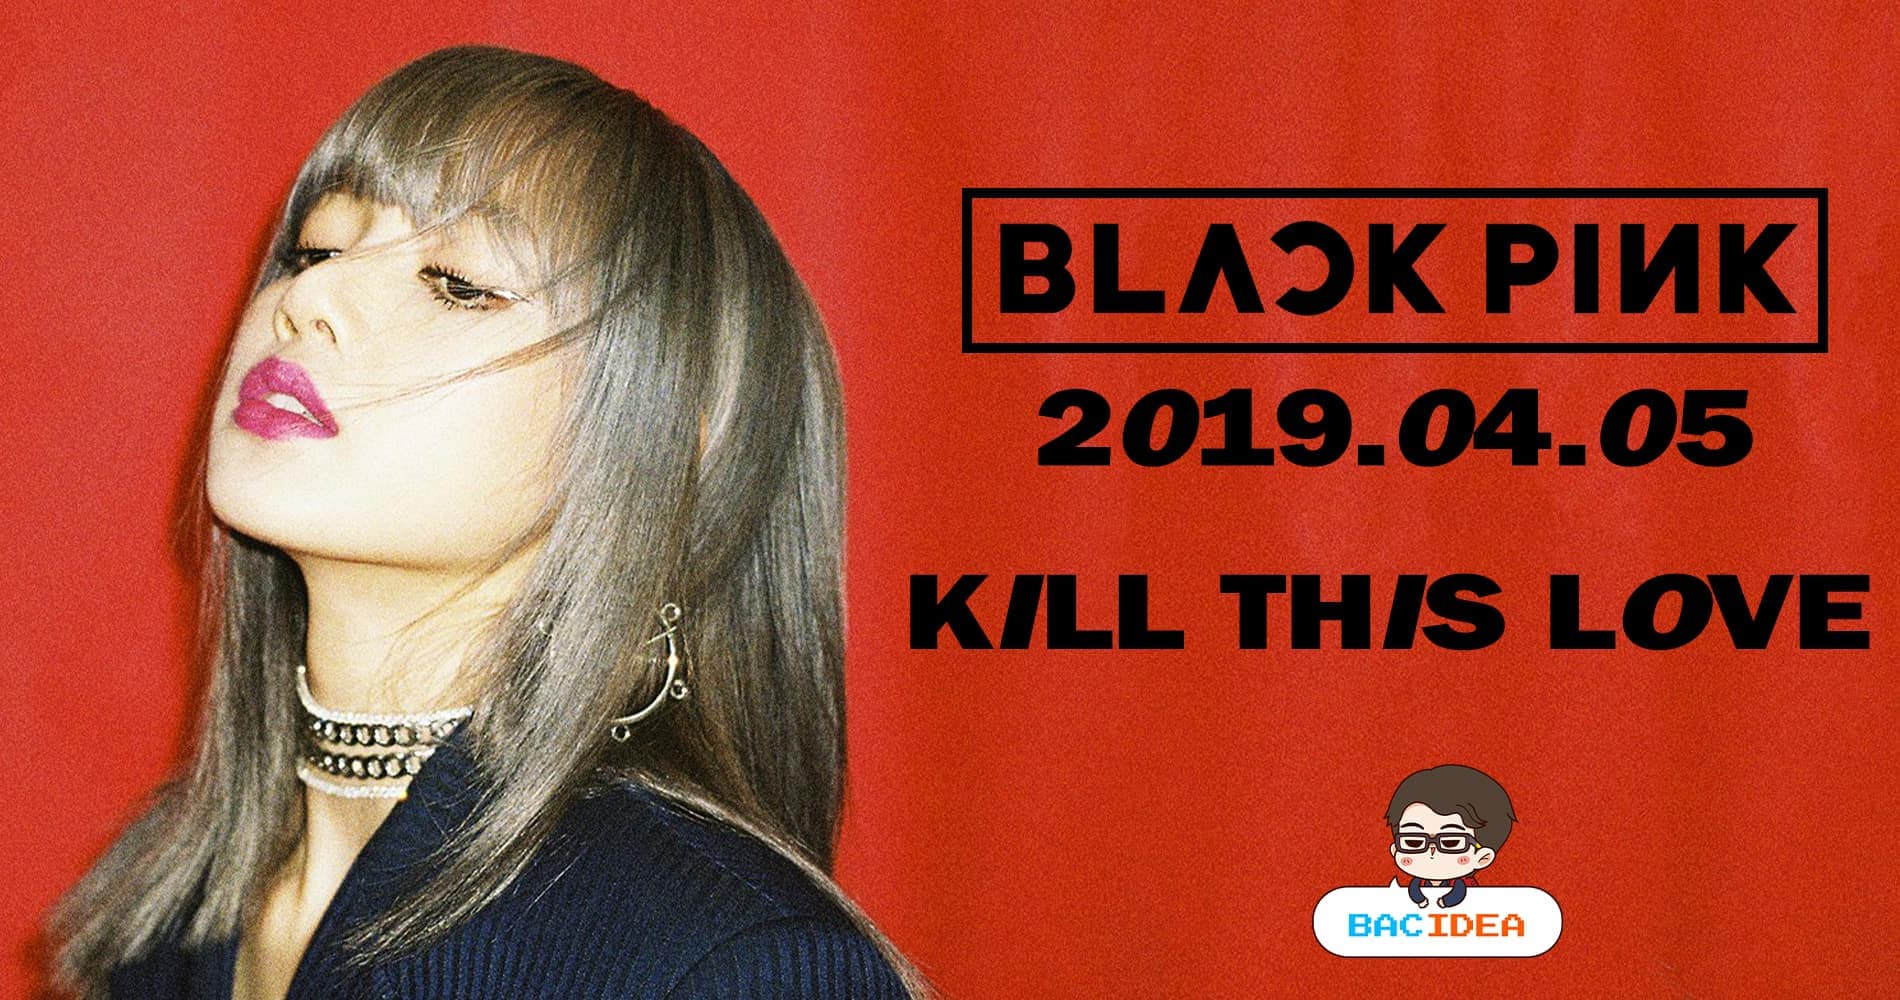 สมการรอคอย !! BLACKPINK ปล่อย Teaser 'KILL THIS LOVE' ประเดิมที่ "ลิซ่า" คนแรก!!! 1